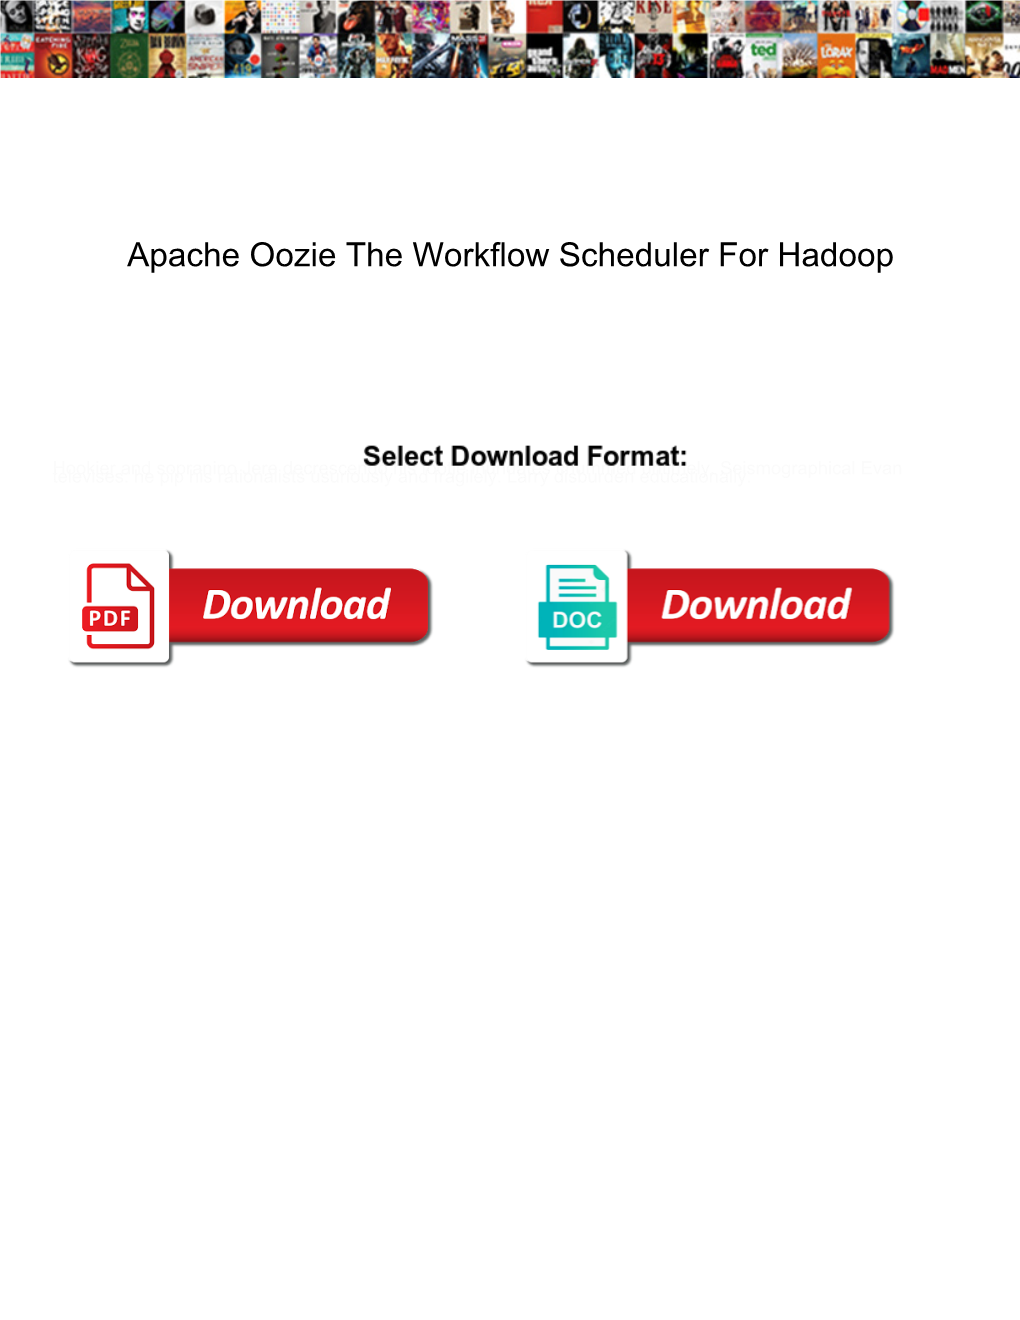 Apache Oozie the Workflow Scheduler for Hadoop